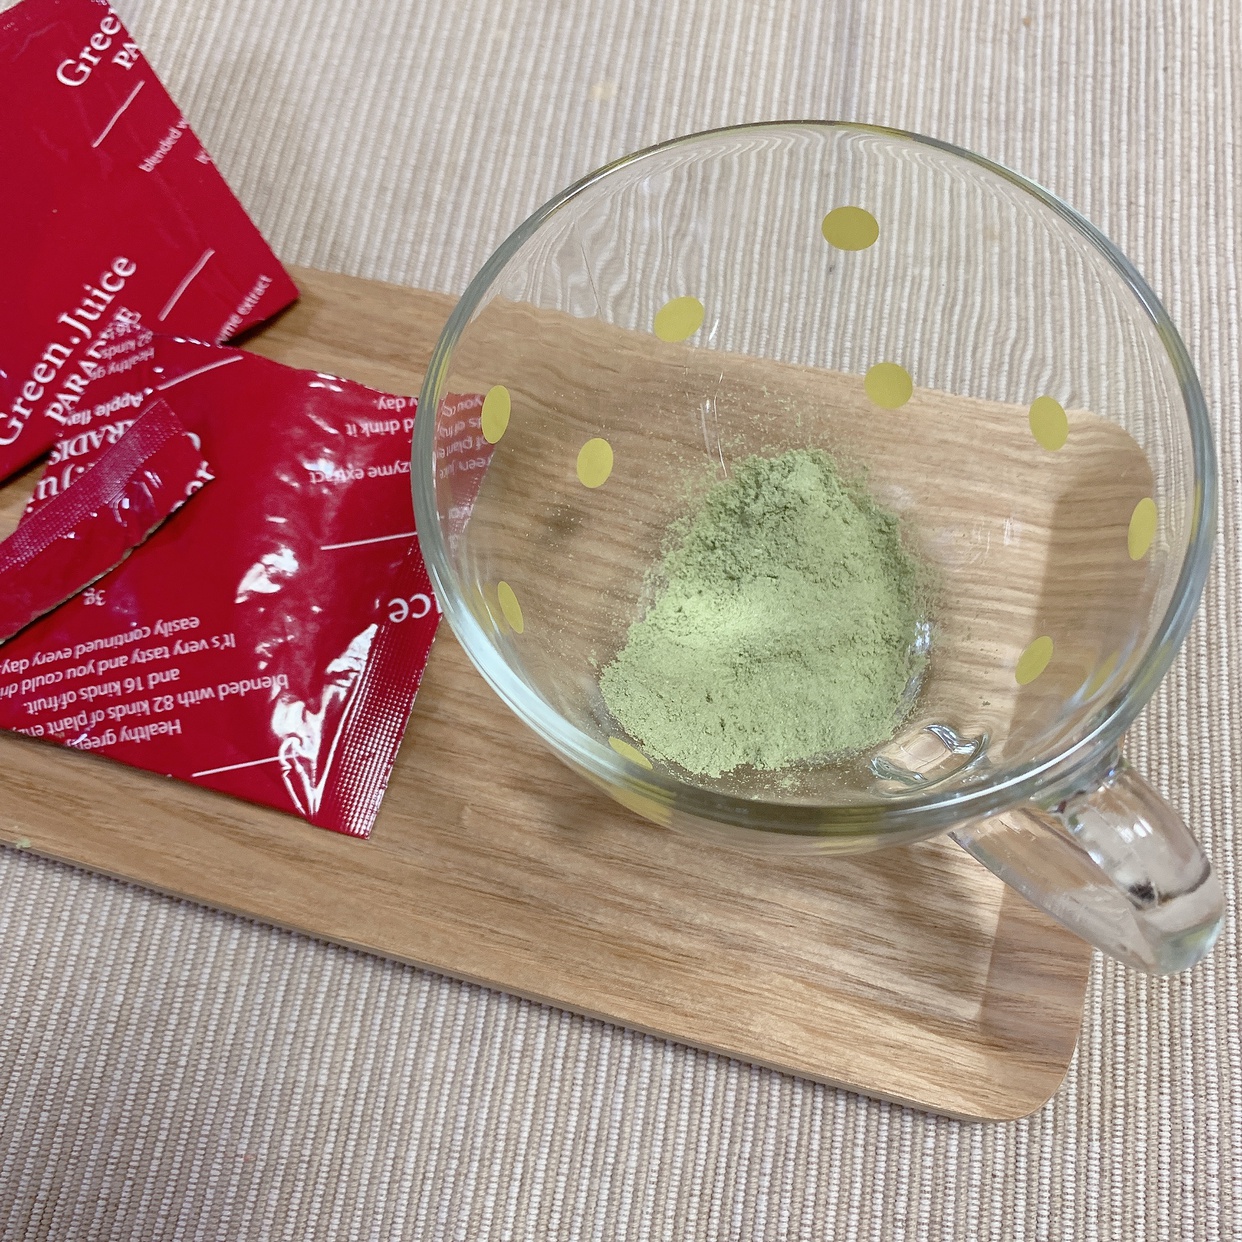 JAPANGALS(ジャパンギャルズ)グリーンジュース パラダイスを使った⸝⸝⸝⸝ ekaさんのクチコミ画像2